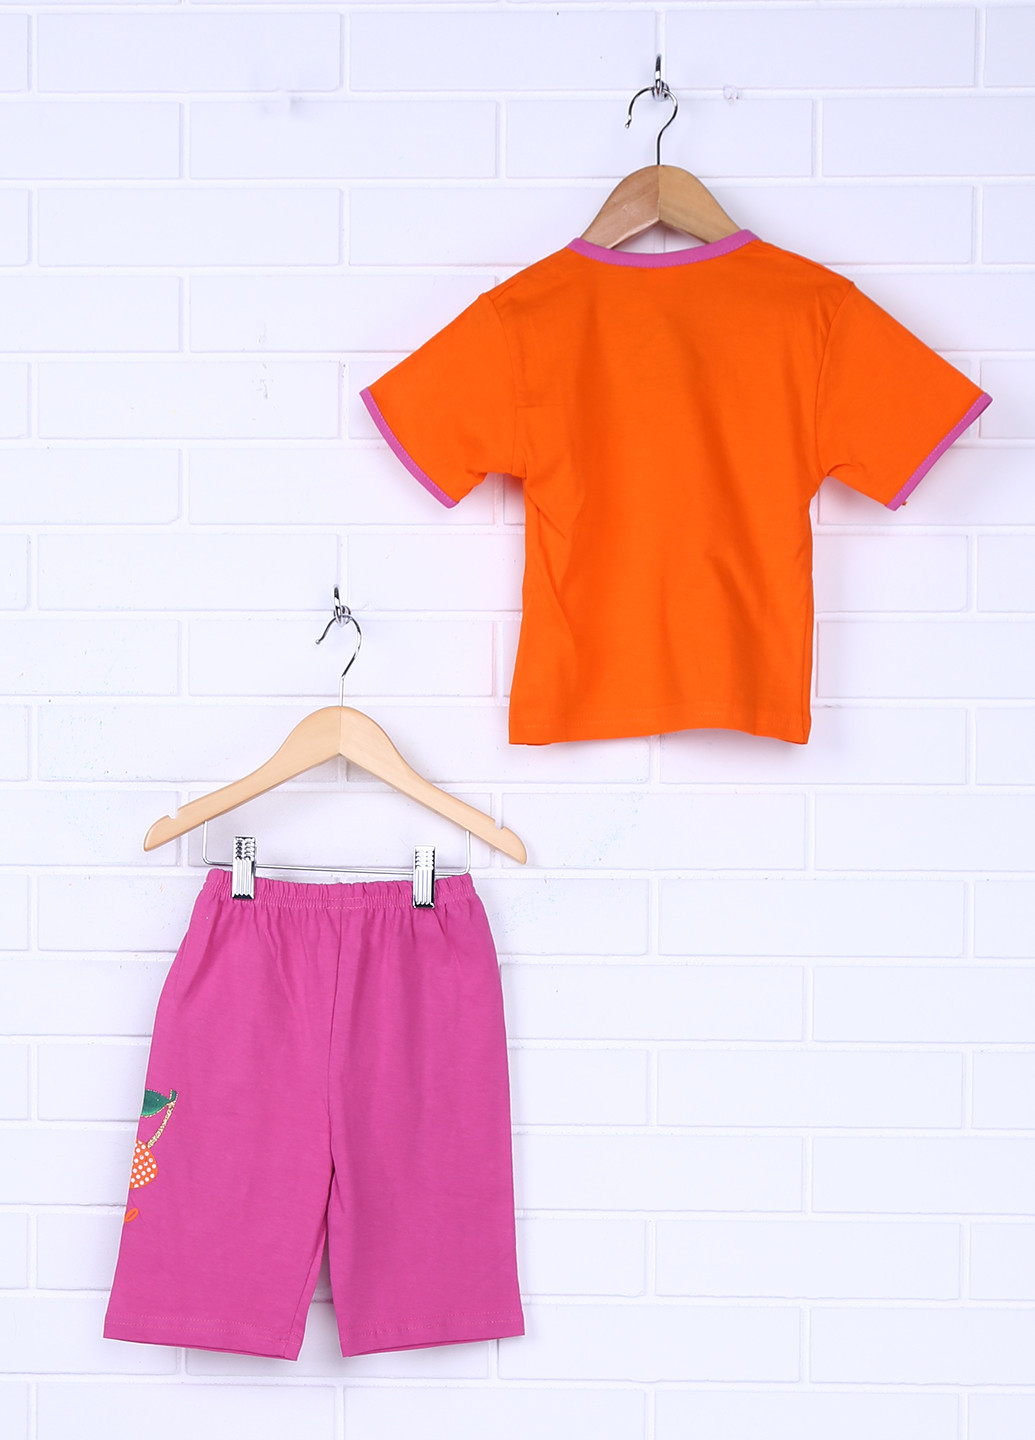 Розовая всесезон пижама (футболка, шорты) Elit Star Kids